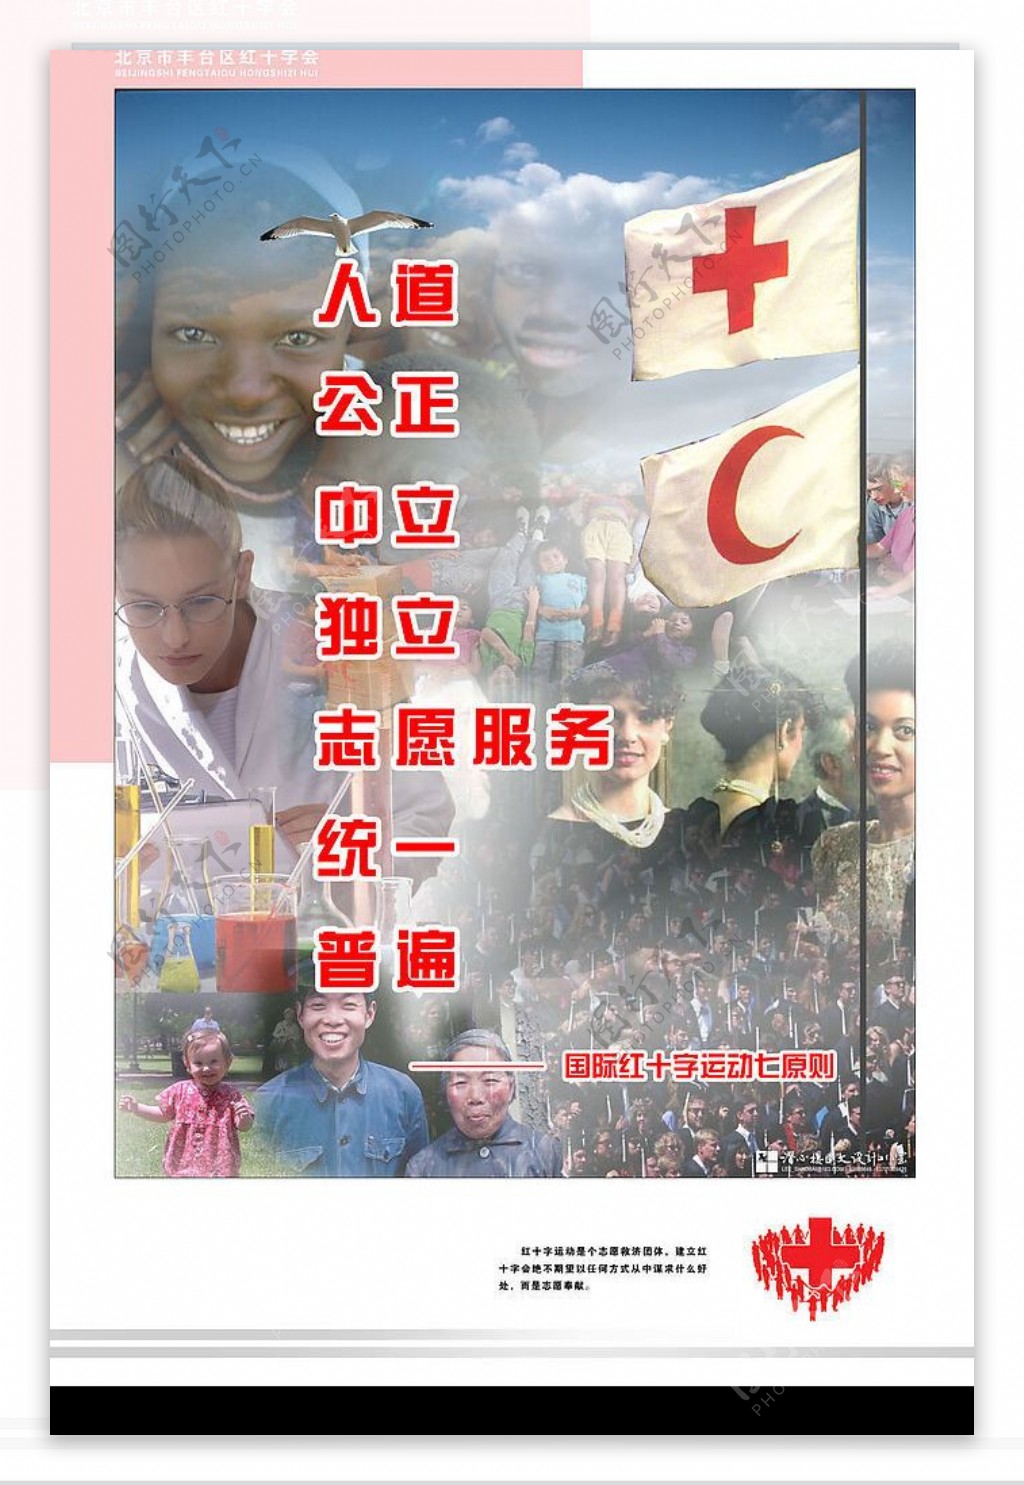 红十字会宣传海报原创设计1图片